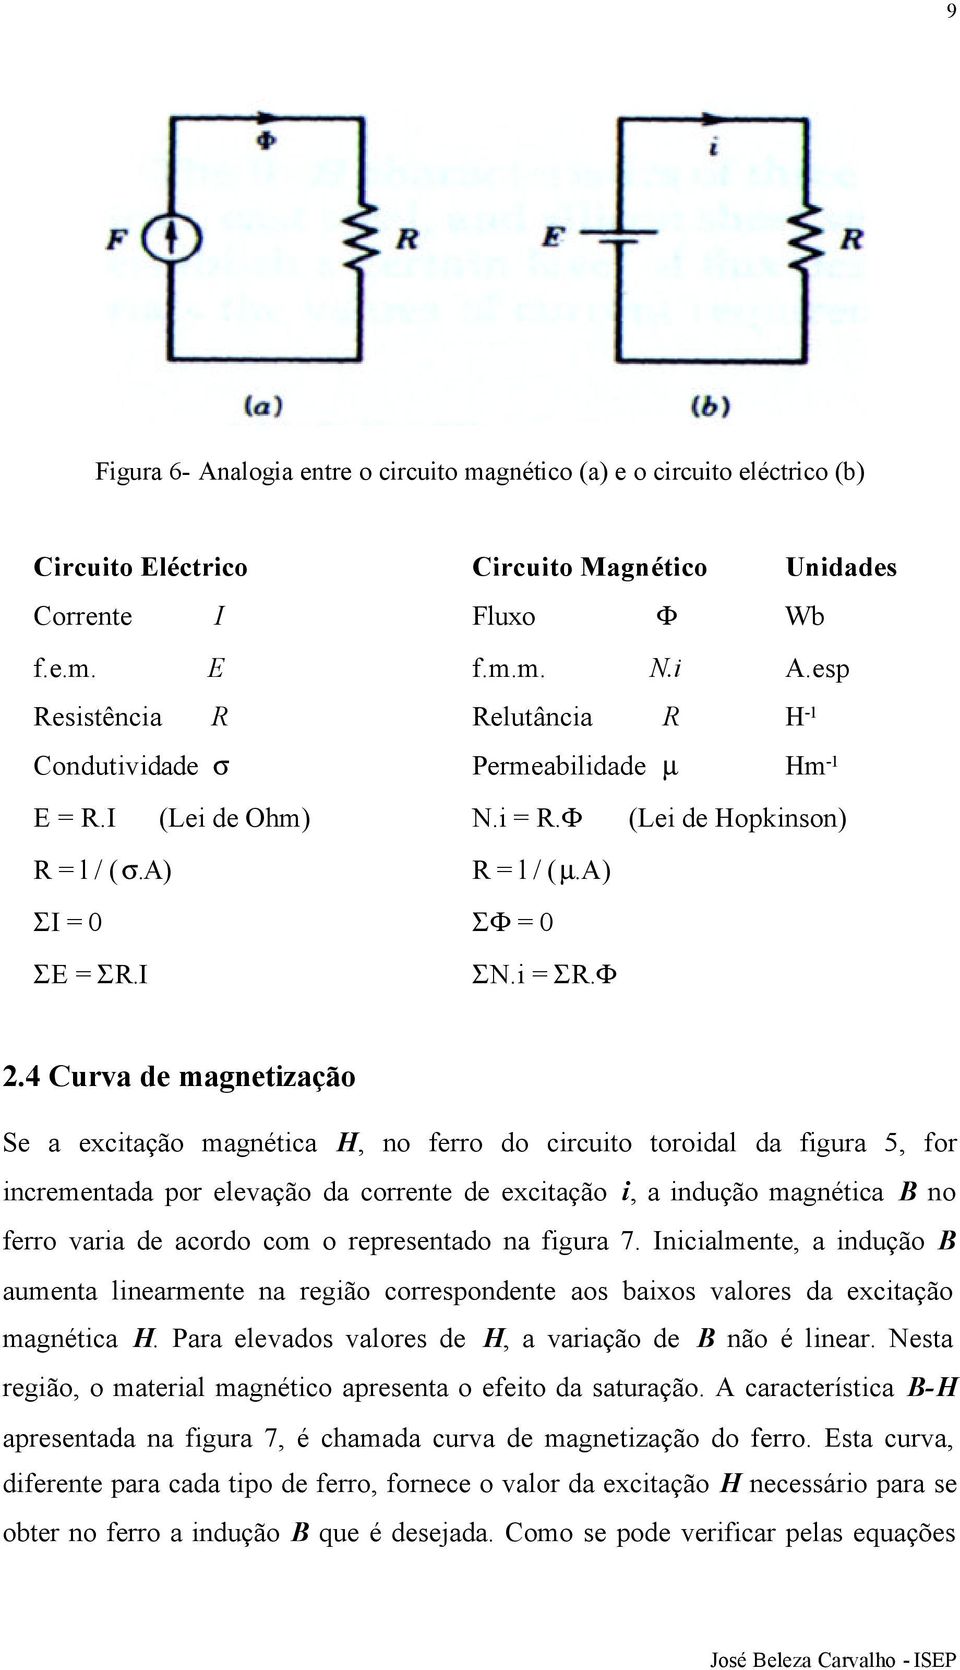 4 Curva de magnetização Se a excitação magnética H, no ferro do circuito toroidal da figura 5, for incrementada por elevação da corrente de excitação i, a indução magnética B no ferro varia de acordo